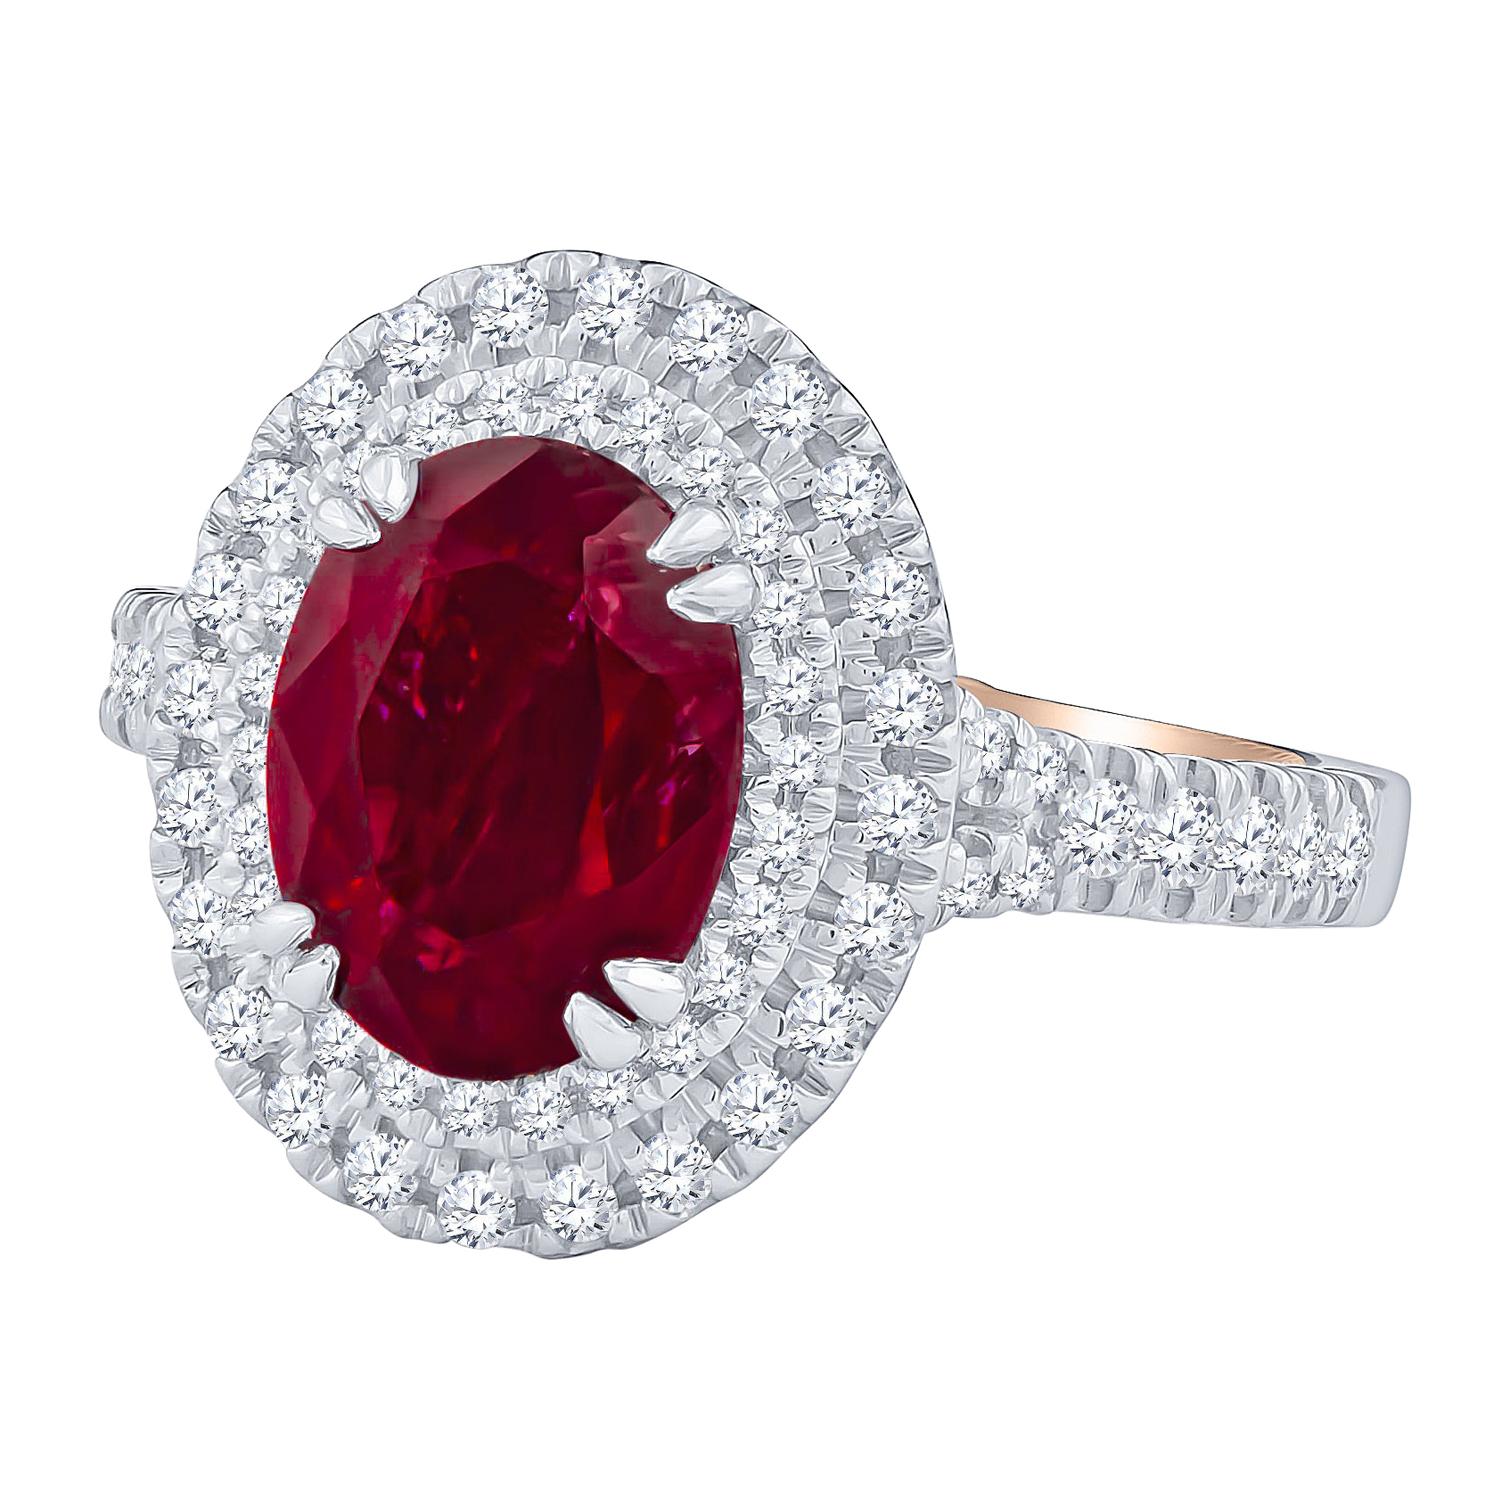 Magnifique bague Verragio qui présente un magnifique rubis de taille ovale de 2,62 carats centré par un double halo de diamants de 0,50 carats de poids total de diamants ronds de taille brillant. Réalisé avec une bande de diamants légèrement fendue